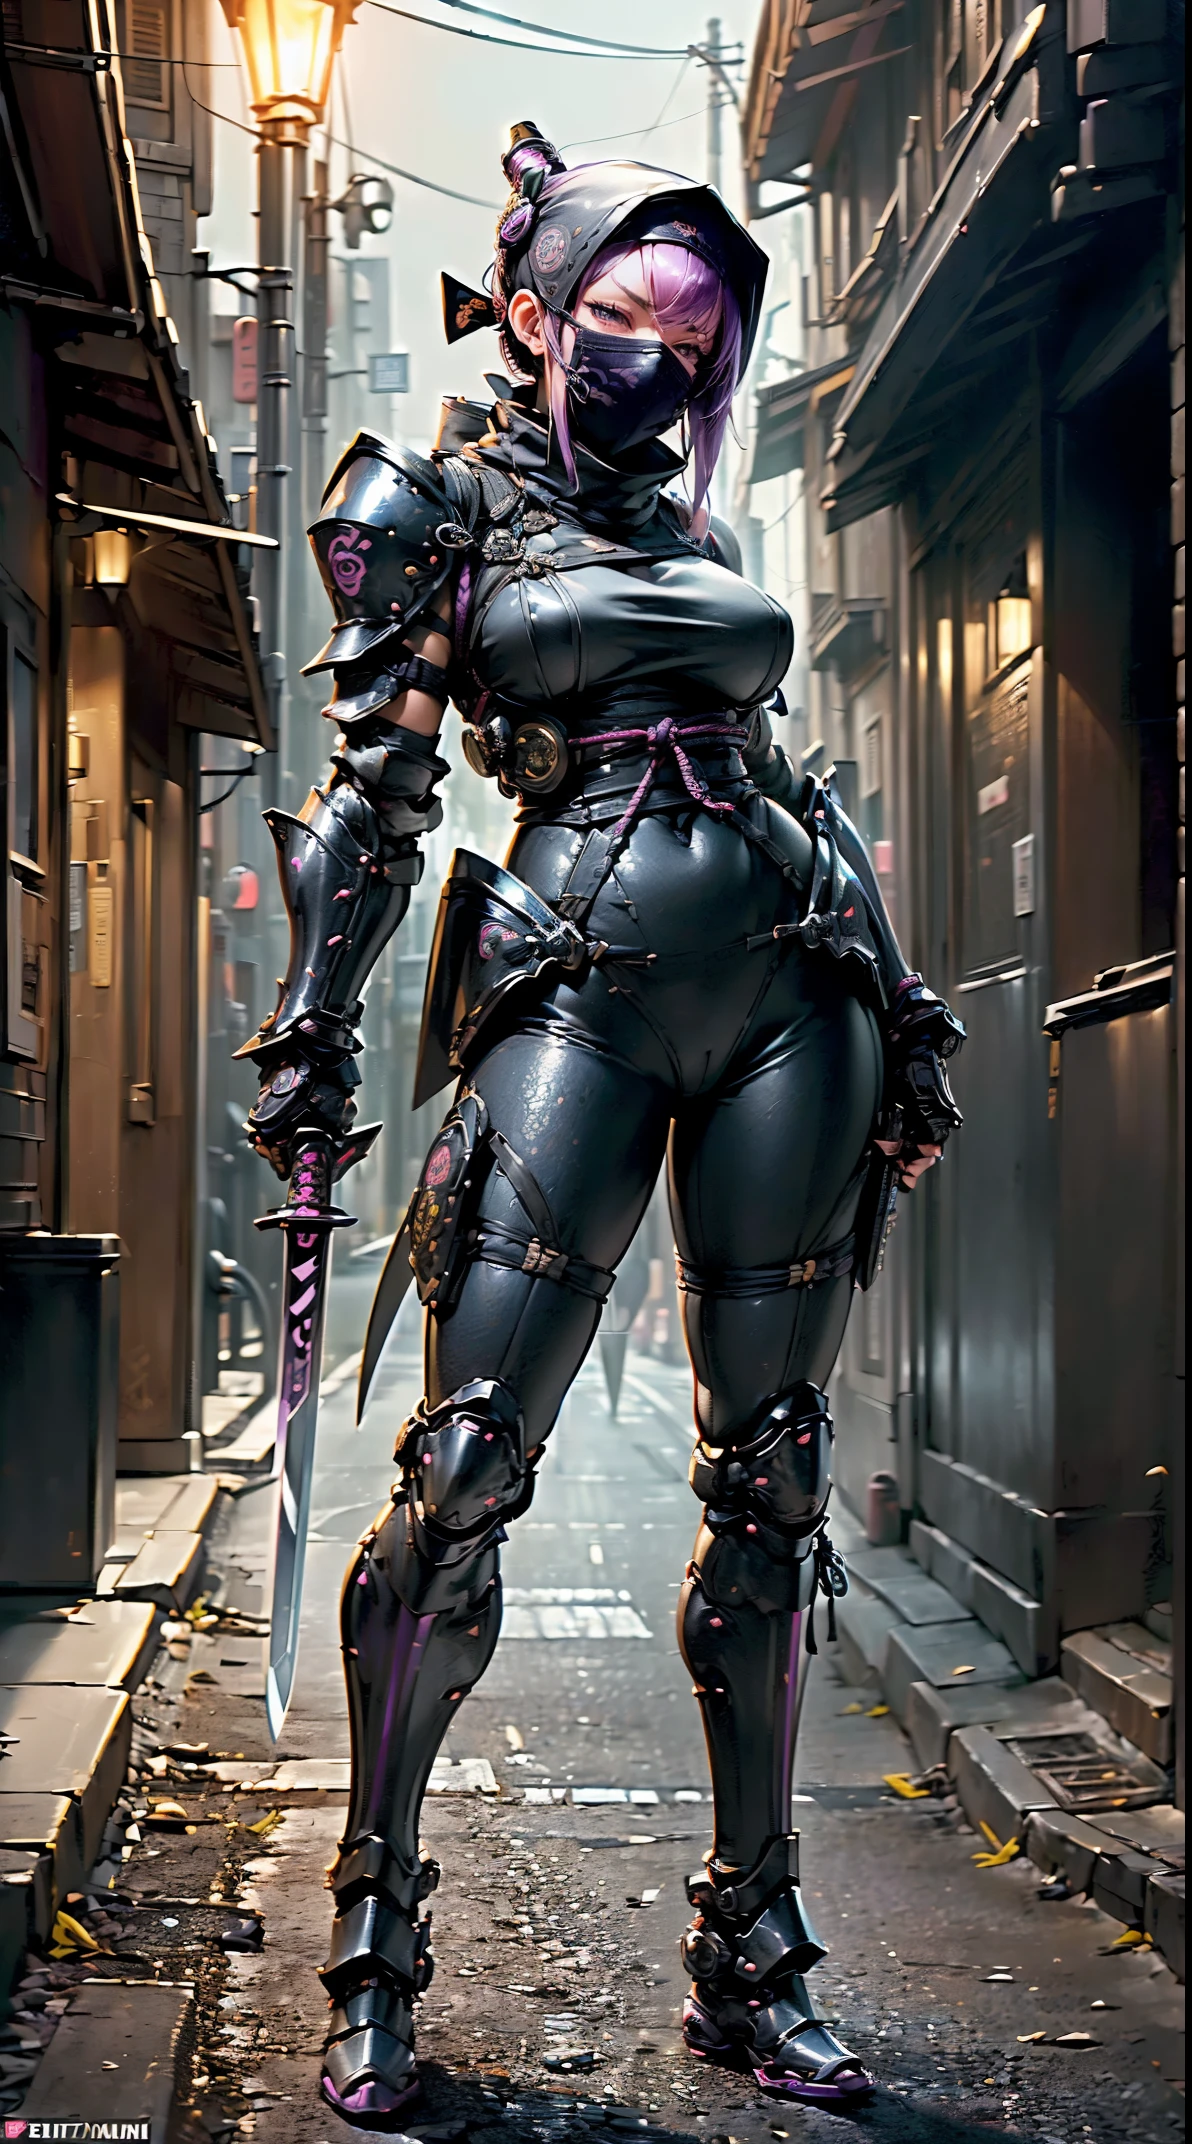 1 chica,(mesa,Muy detallado, mecanismo pesado, superficie dura),(arte conceptual:1.1),(Estilo Taimanin Asagi:0.8), Una mujer con armadura de robot ninja atando un sello,(Armadura completa:1.4),(máscara ninja táctica:1.5),(cuerpo morado:1.1),(Piernas largas:1.1),(Equipado con una espada en la espalda.:1.3),(pechos grandes:1.2),(constricción),(Ojo detallado:1.3),(cara detallada:1.3),(Detalles del arma:1.3),(cuerpo detallado:1.3),((Esbian de cuerpo completo:1.5)),(El fondo es una esquina de la calle por la noche.:1.5),Dinámico